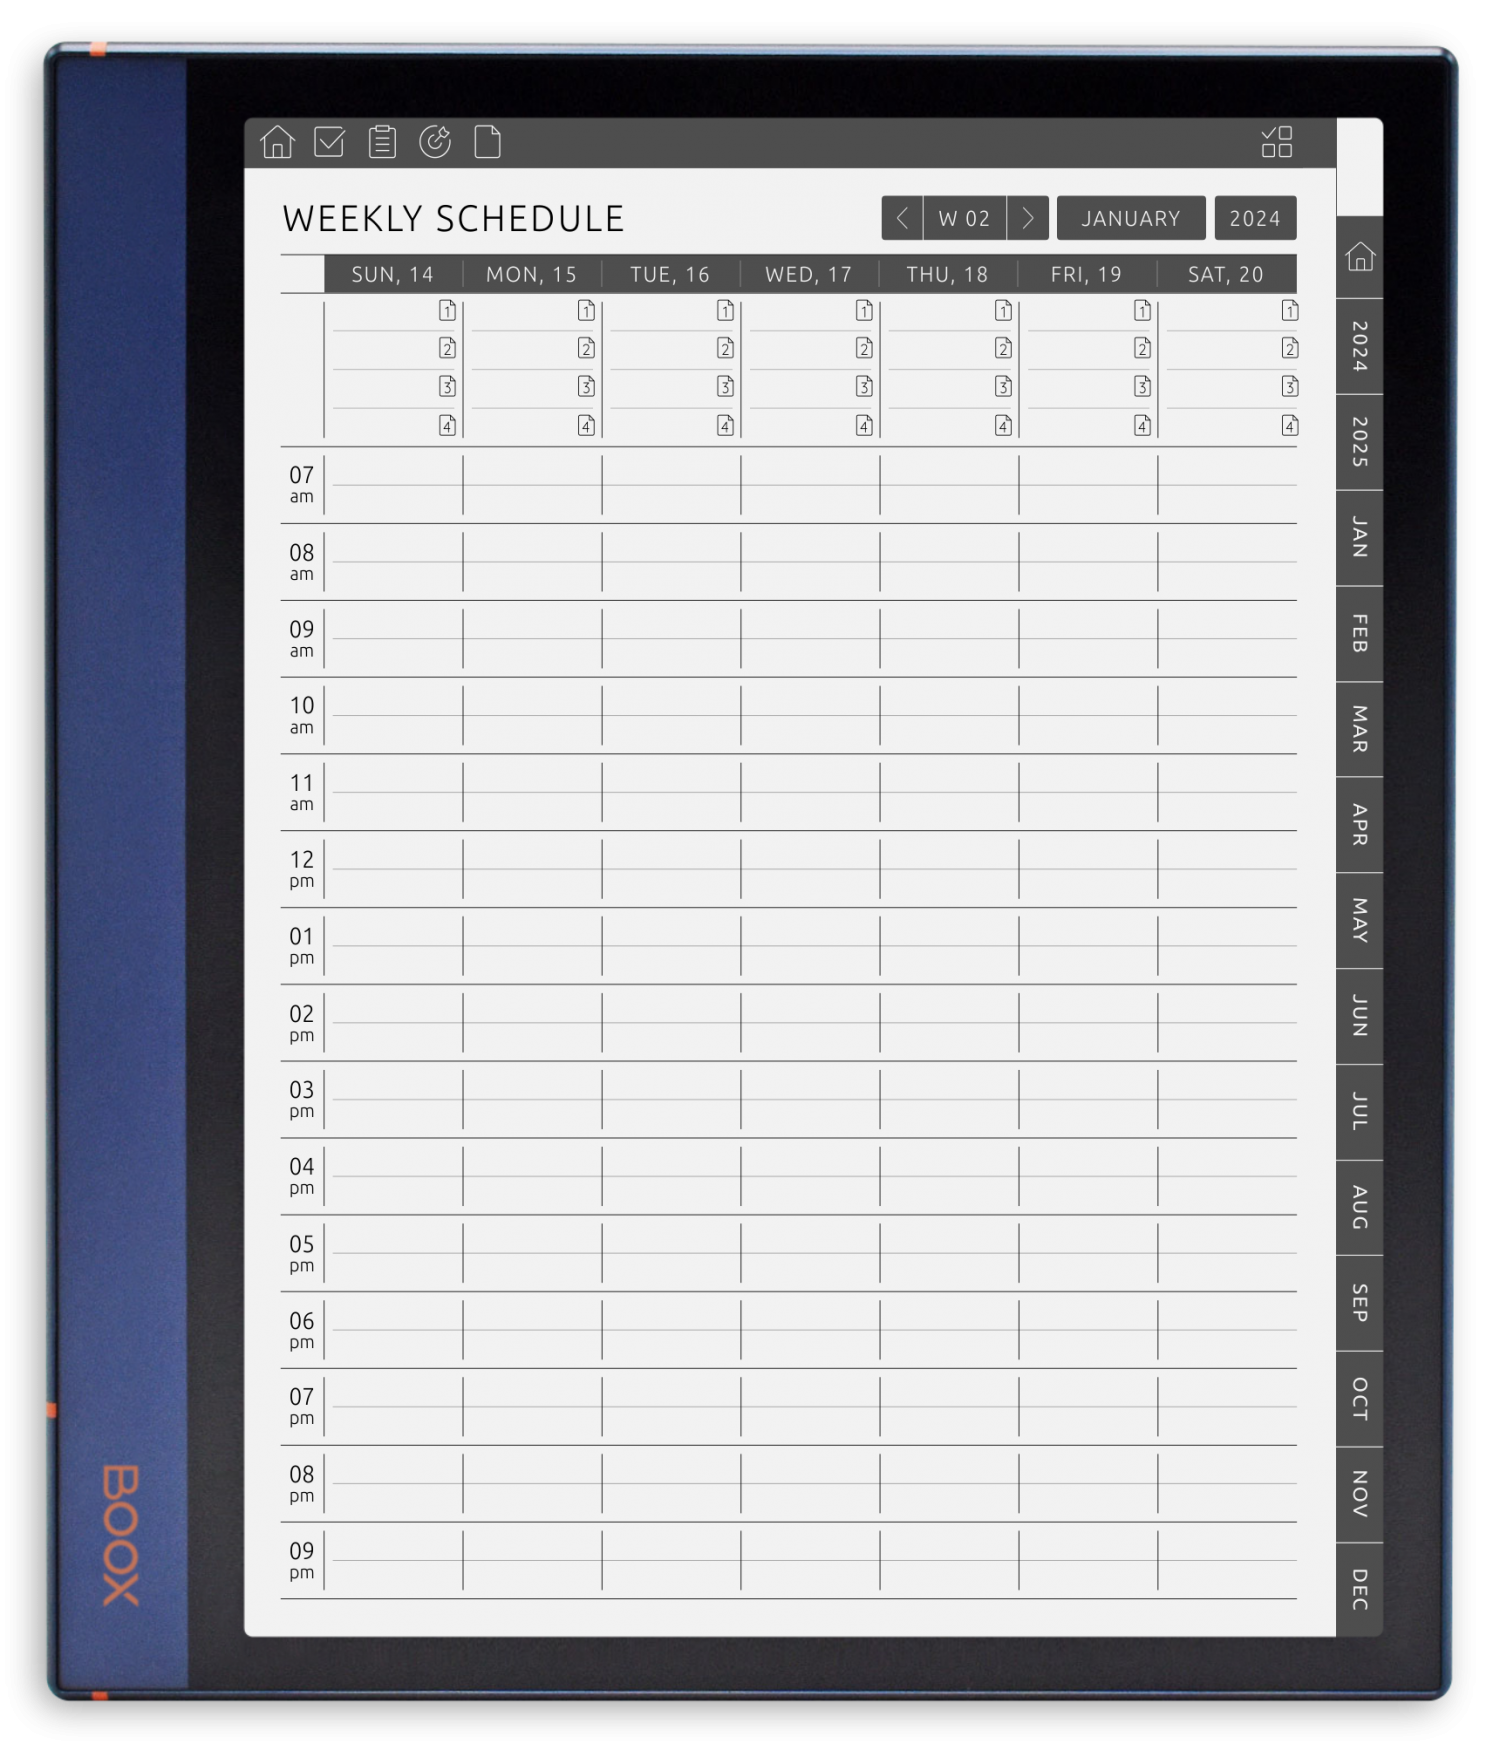 ONYX BOOX - Weekly Schedule Planner - Portrait Original Theme